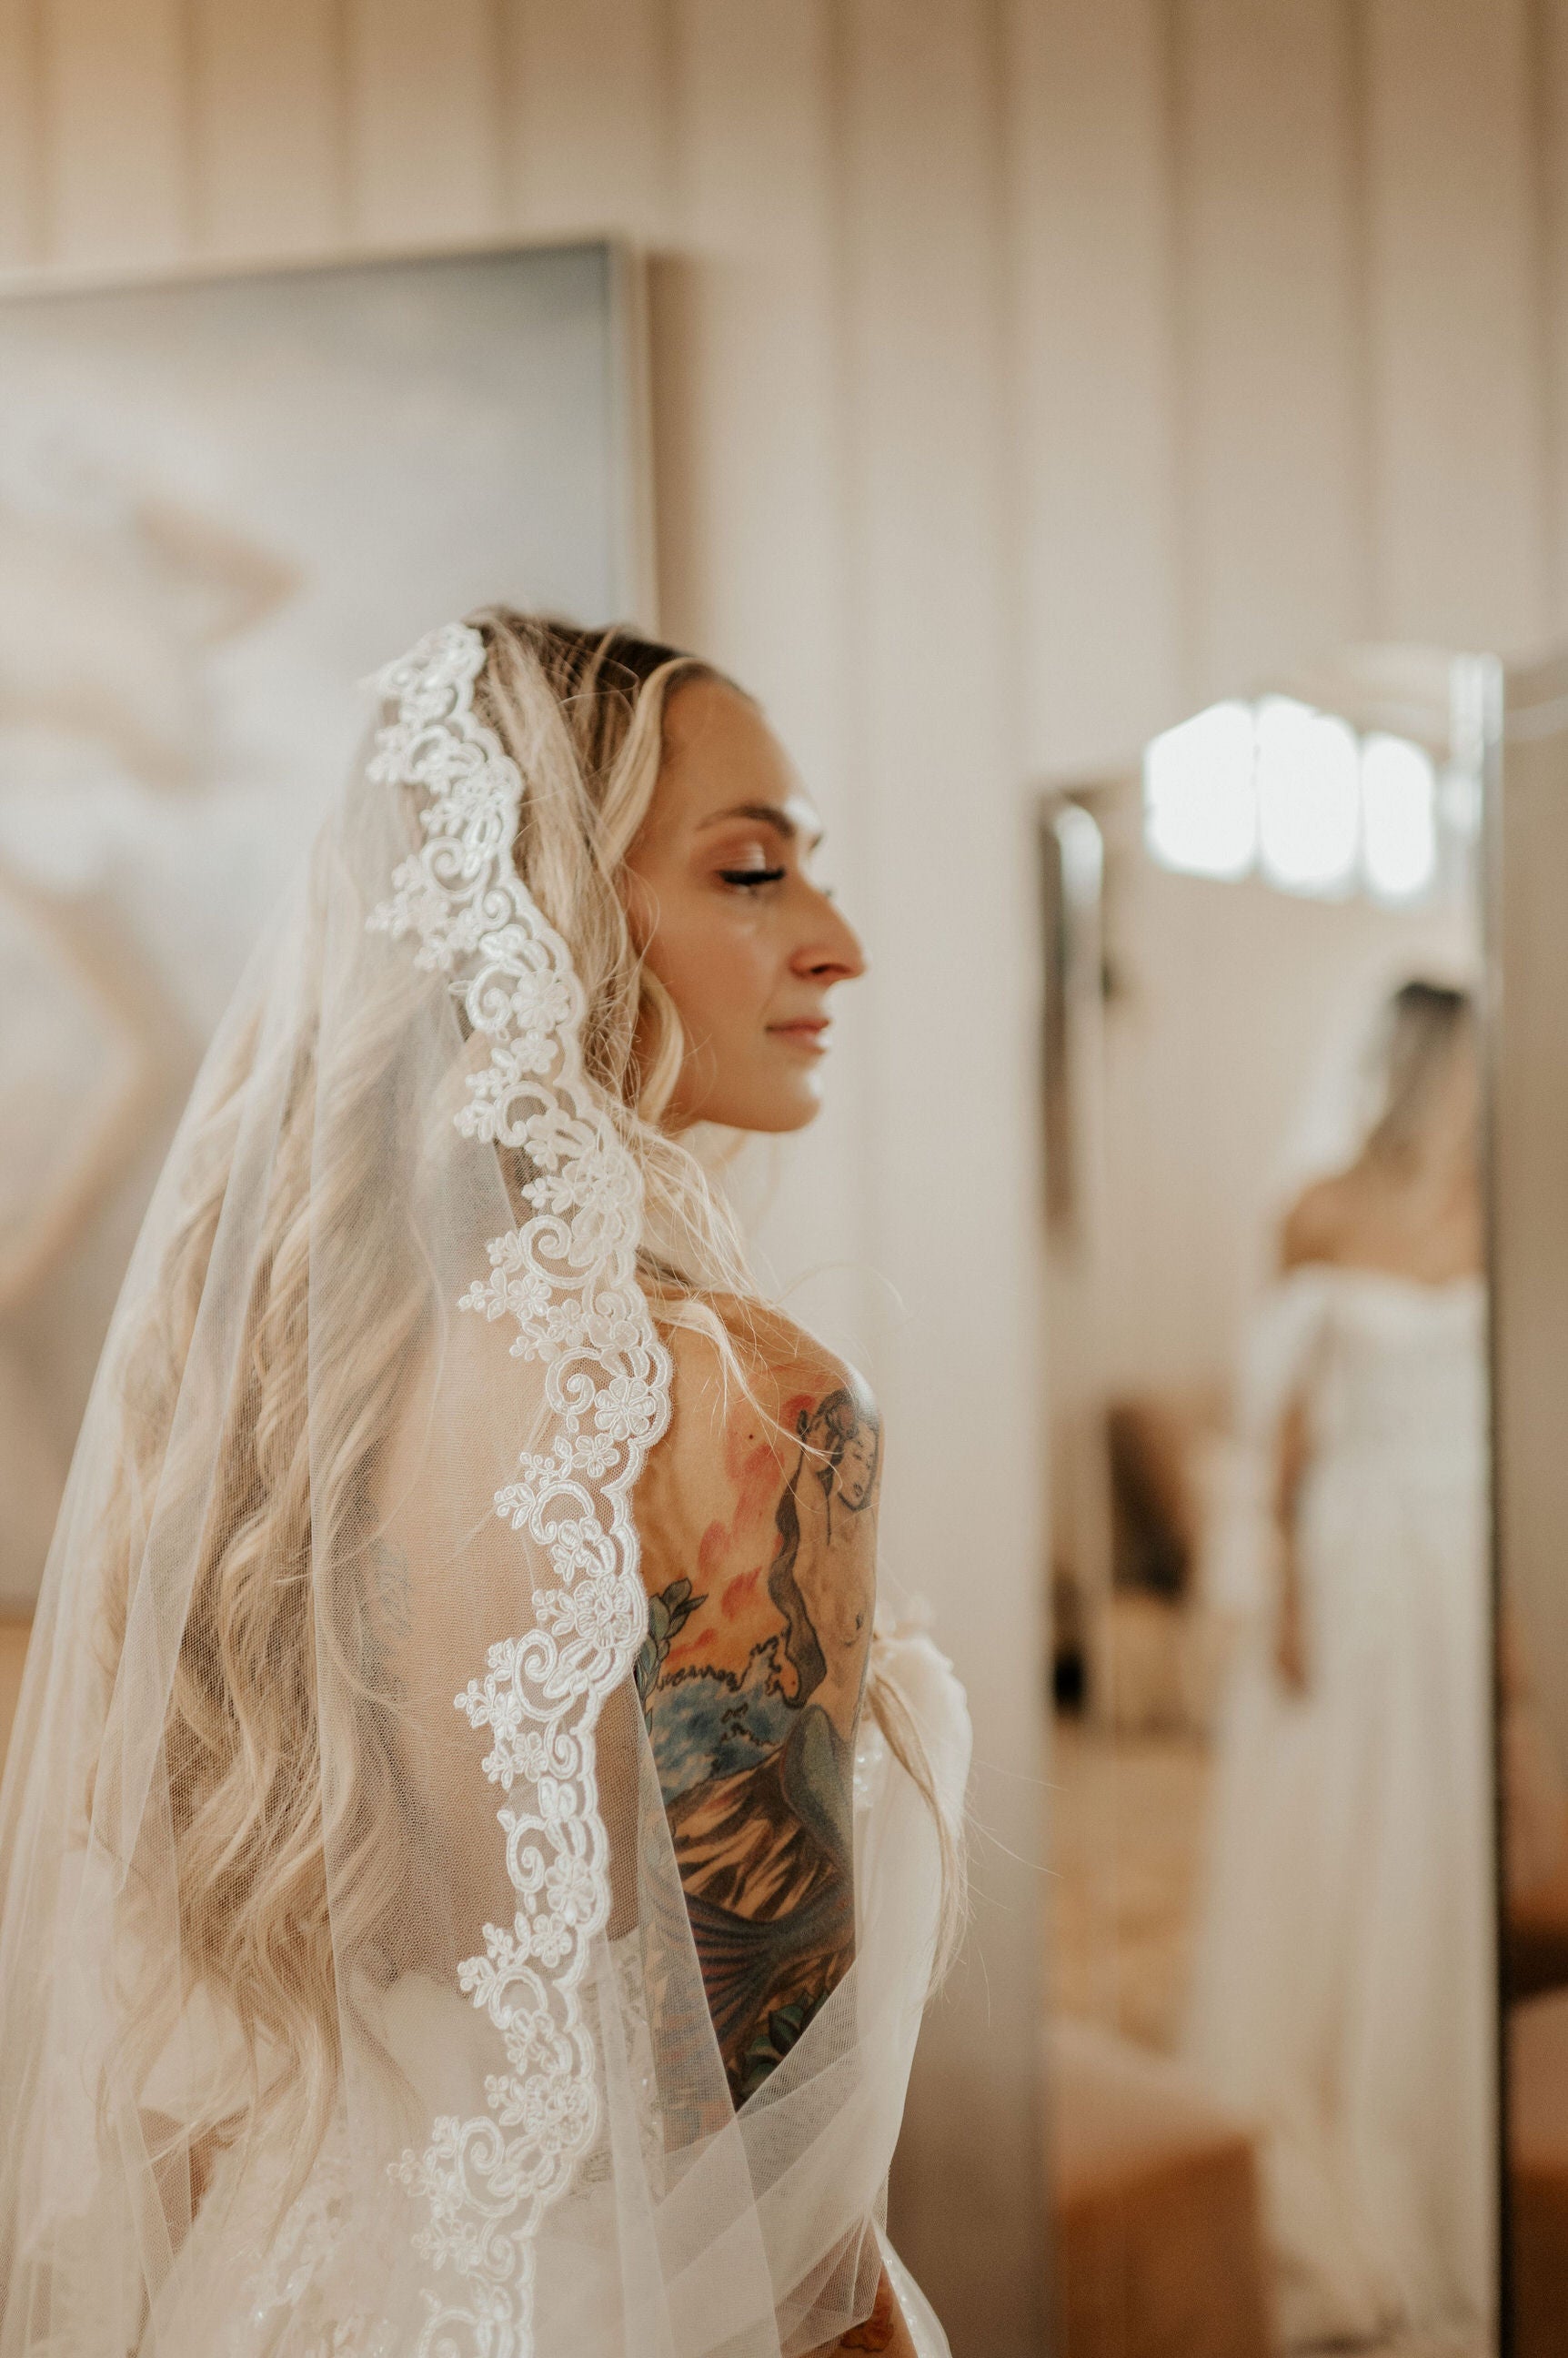 Waltz / Chapel / Cathedral wedding veil, bridal veil, wedding veil ivory,  wedding veil lace trim, beaded lace veil, beaded veil